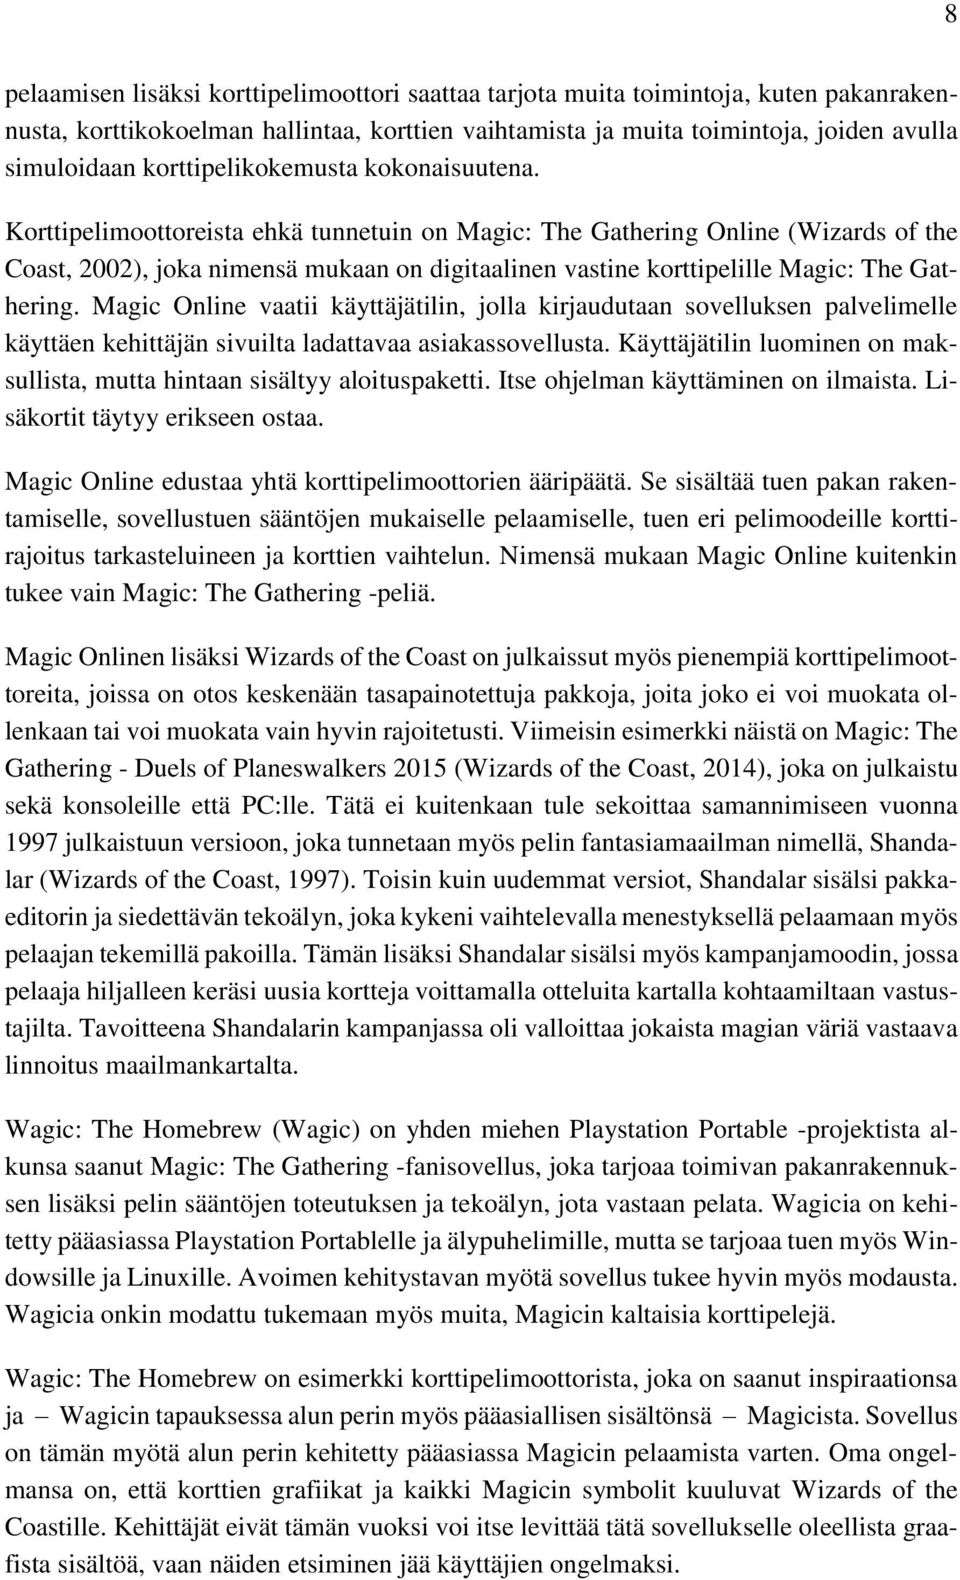 Korttipelimoottoreista ehkä tunnetuin on Magic: The Gathering Online (Wizards of the Coast, 2002), joka nimensä mukaan on digitaalinen vastine korttipelille Magic: The Gathering.